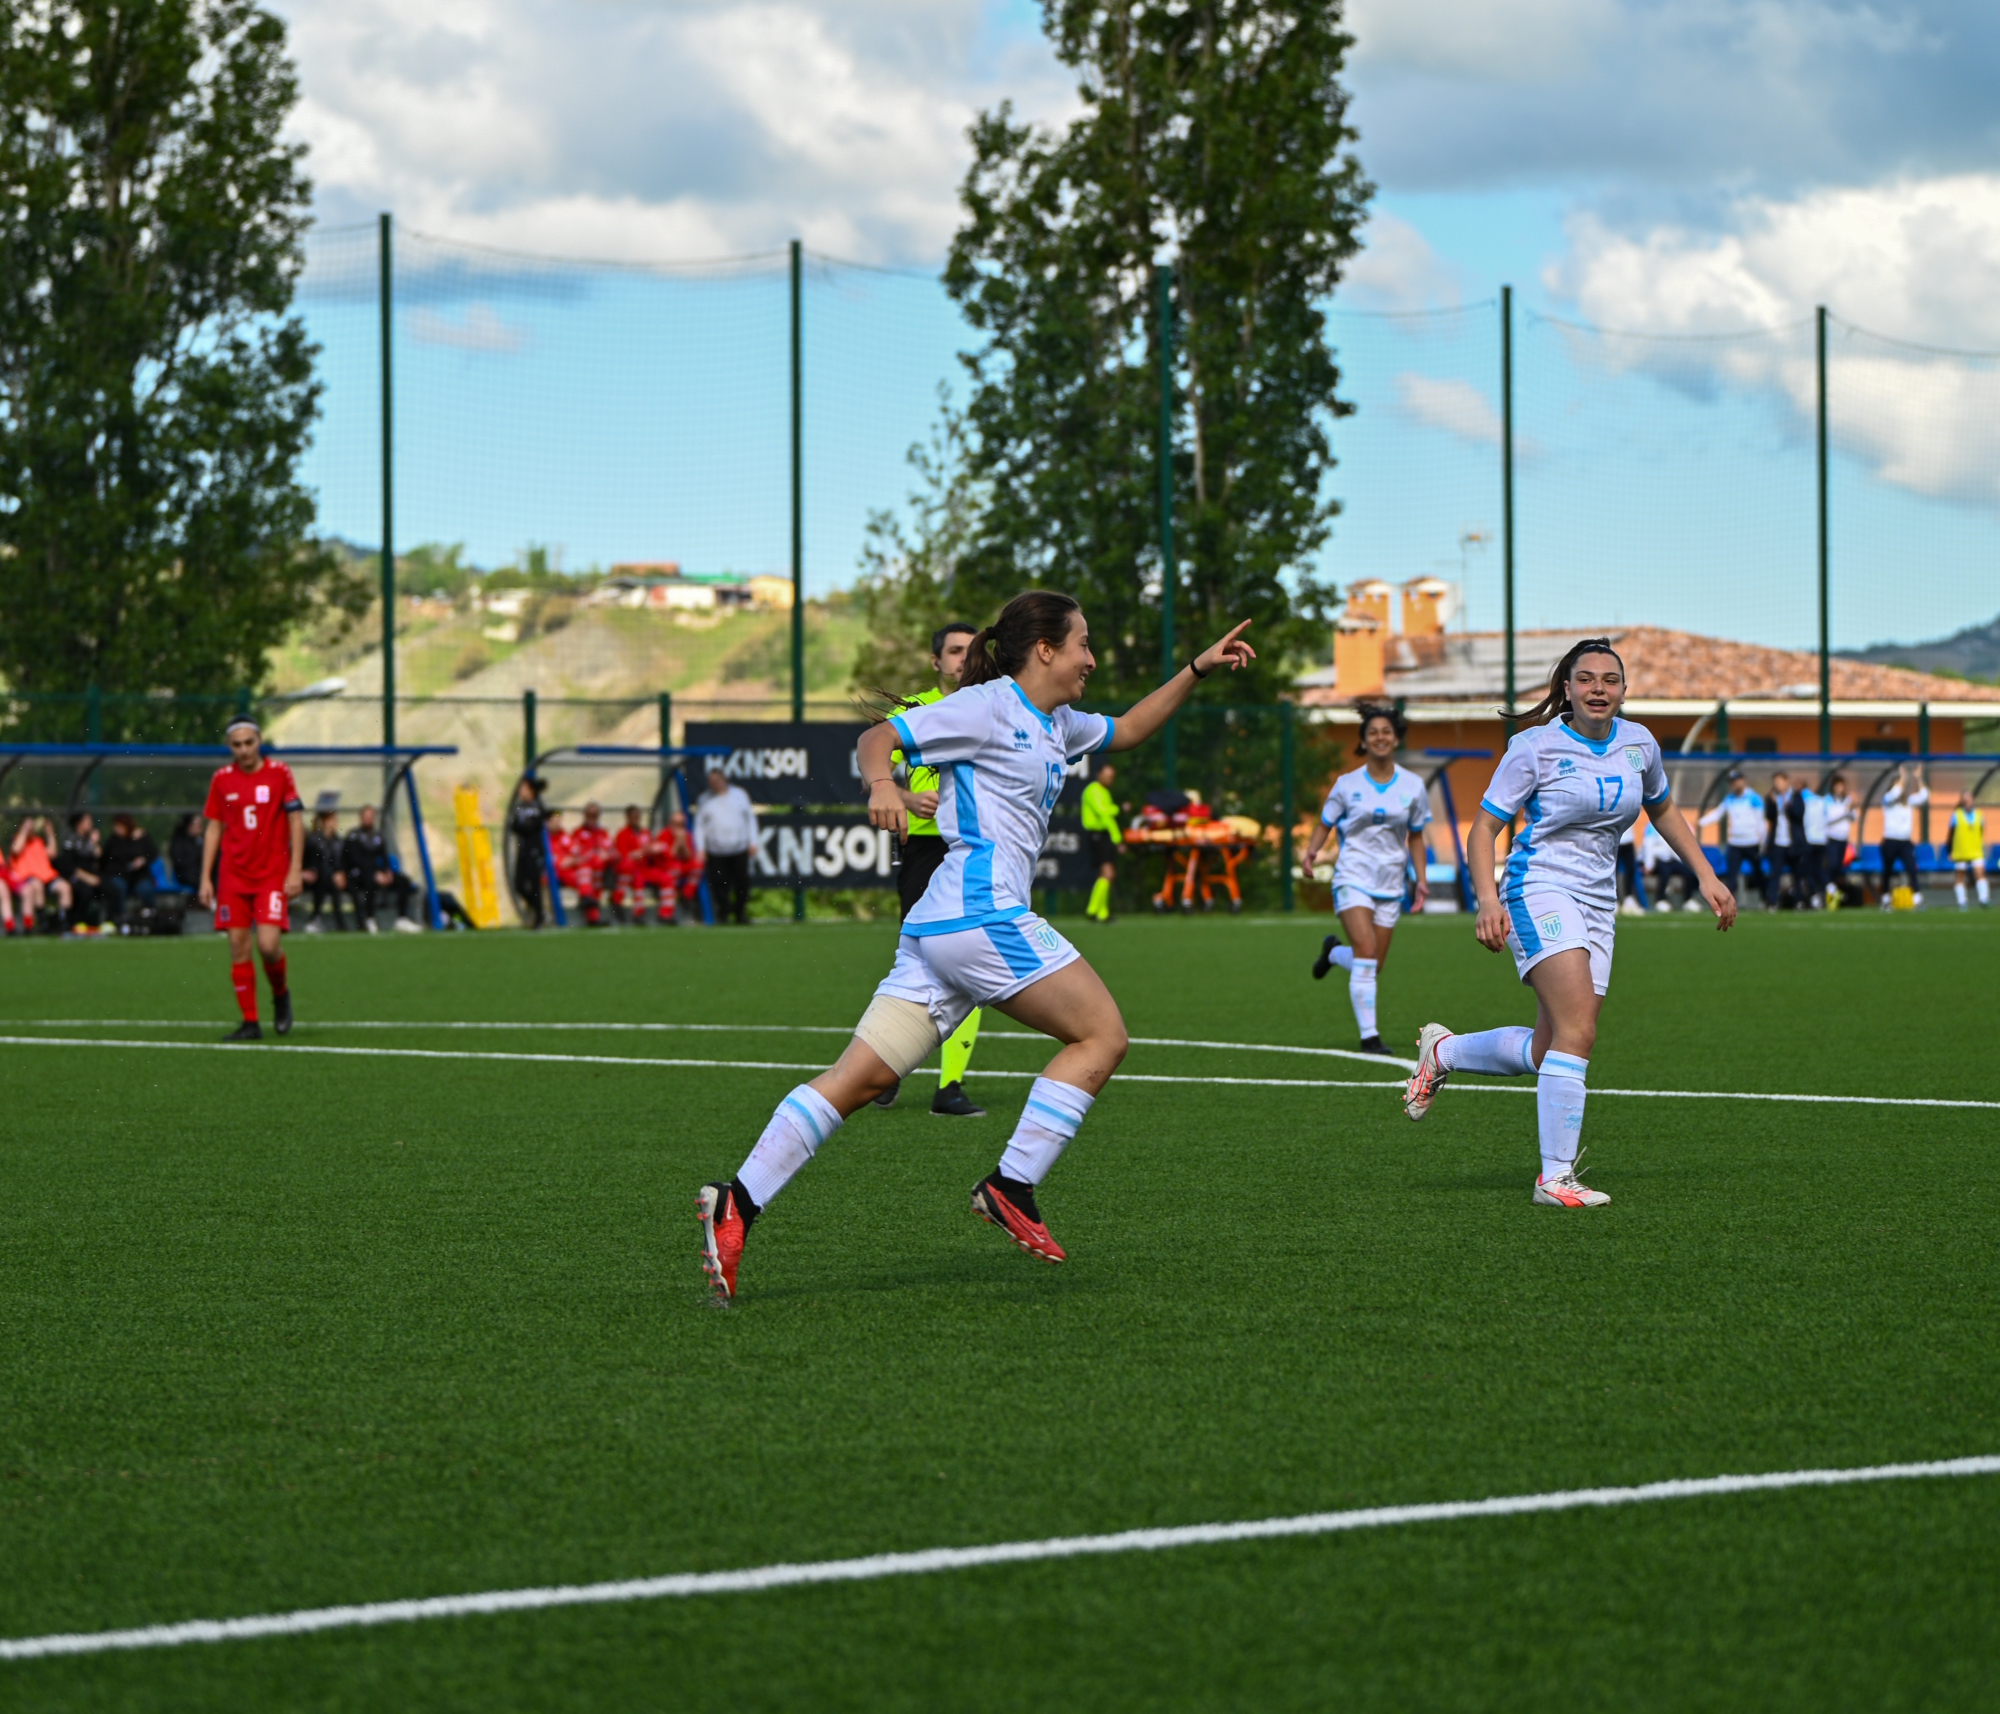 Calcio giovanile femminile, l’U16 di San Marino perde per 6-2 contro il Lussemburgo